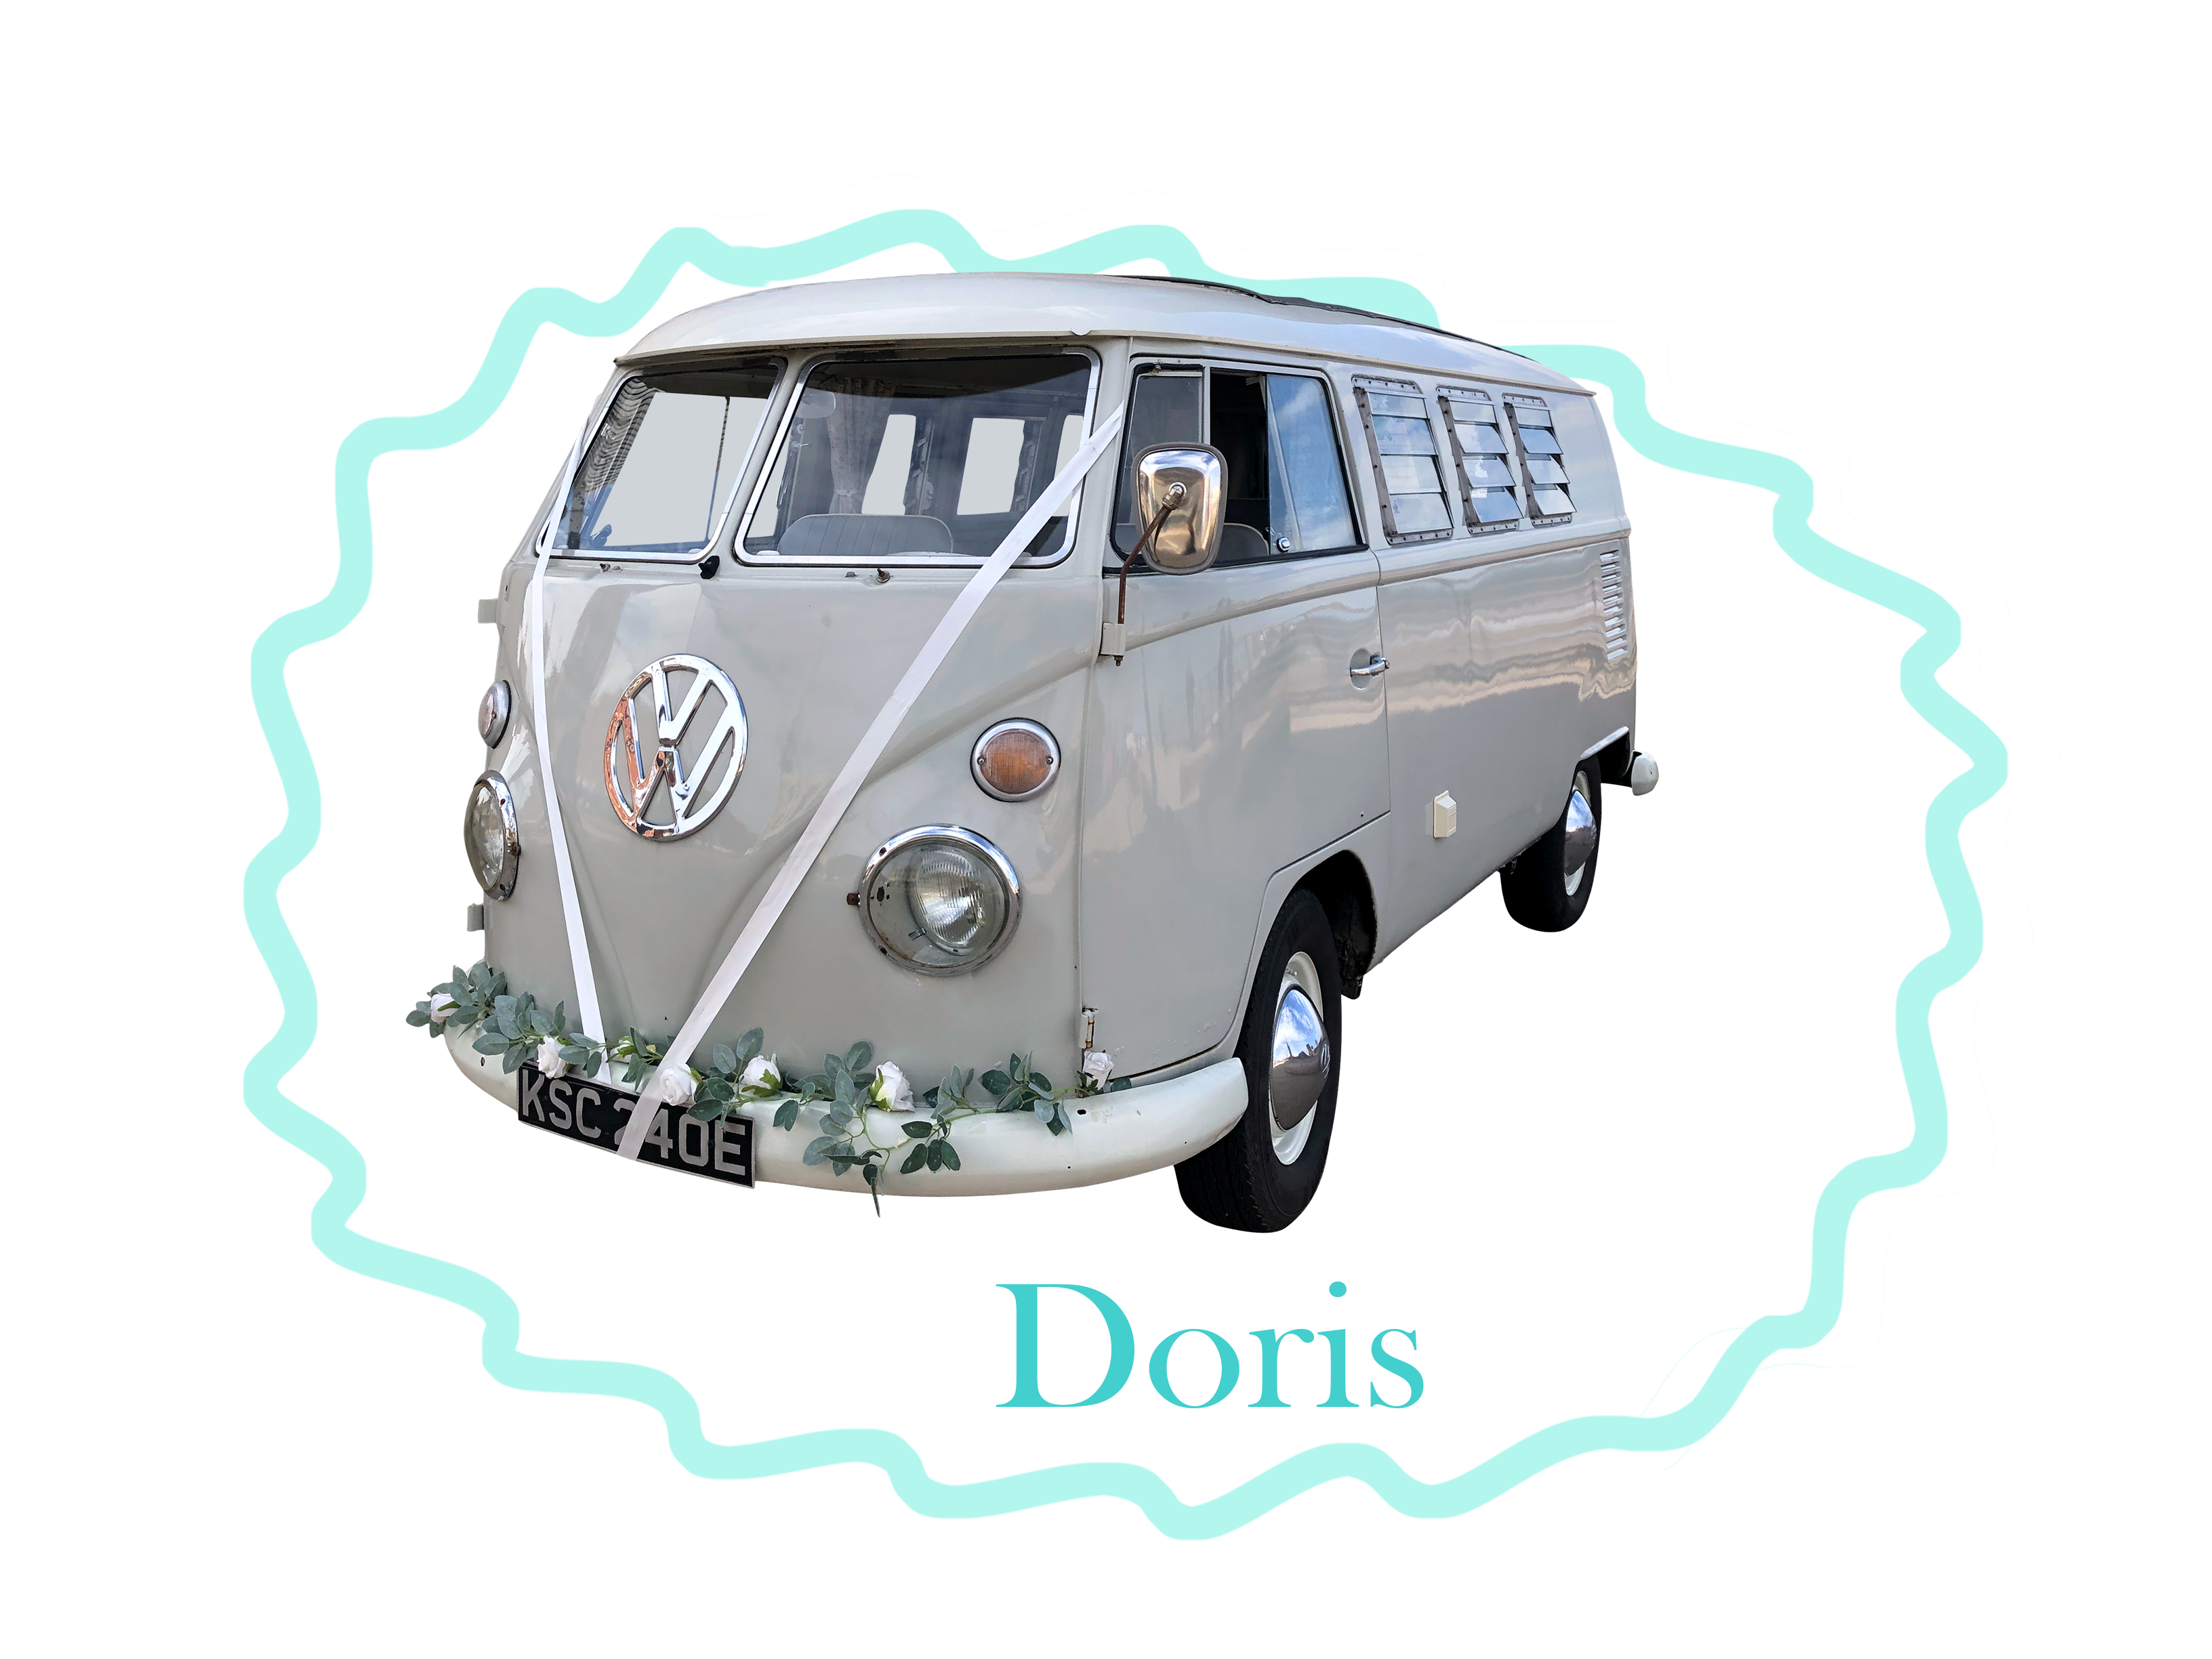 Doris VW Wedding Van for hire